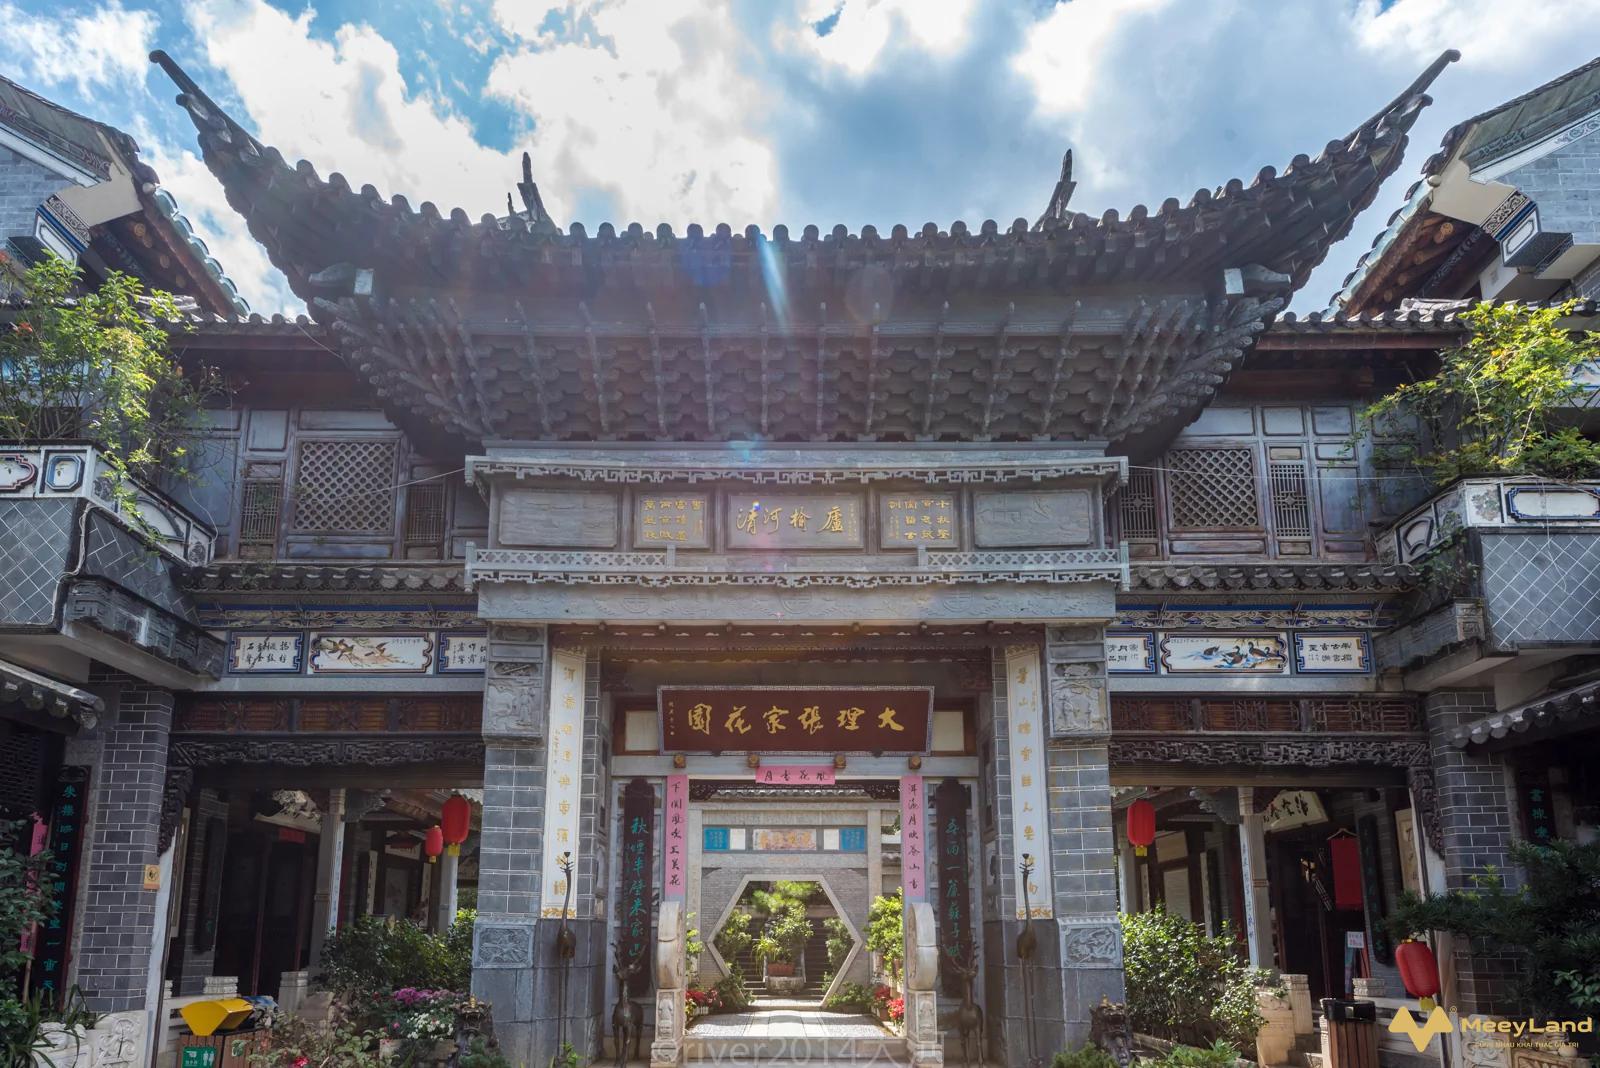 
Người Trung Quốc cổ sử dụng nhiều loại gạch khác nhau trong xây dựng và thiết kế nhà
